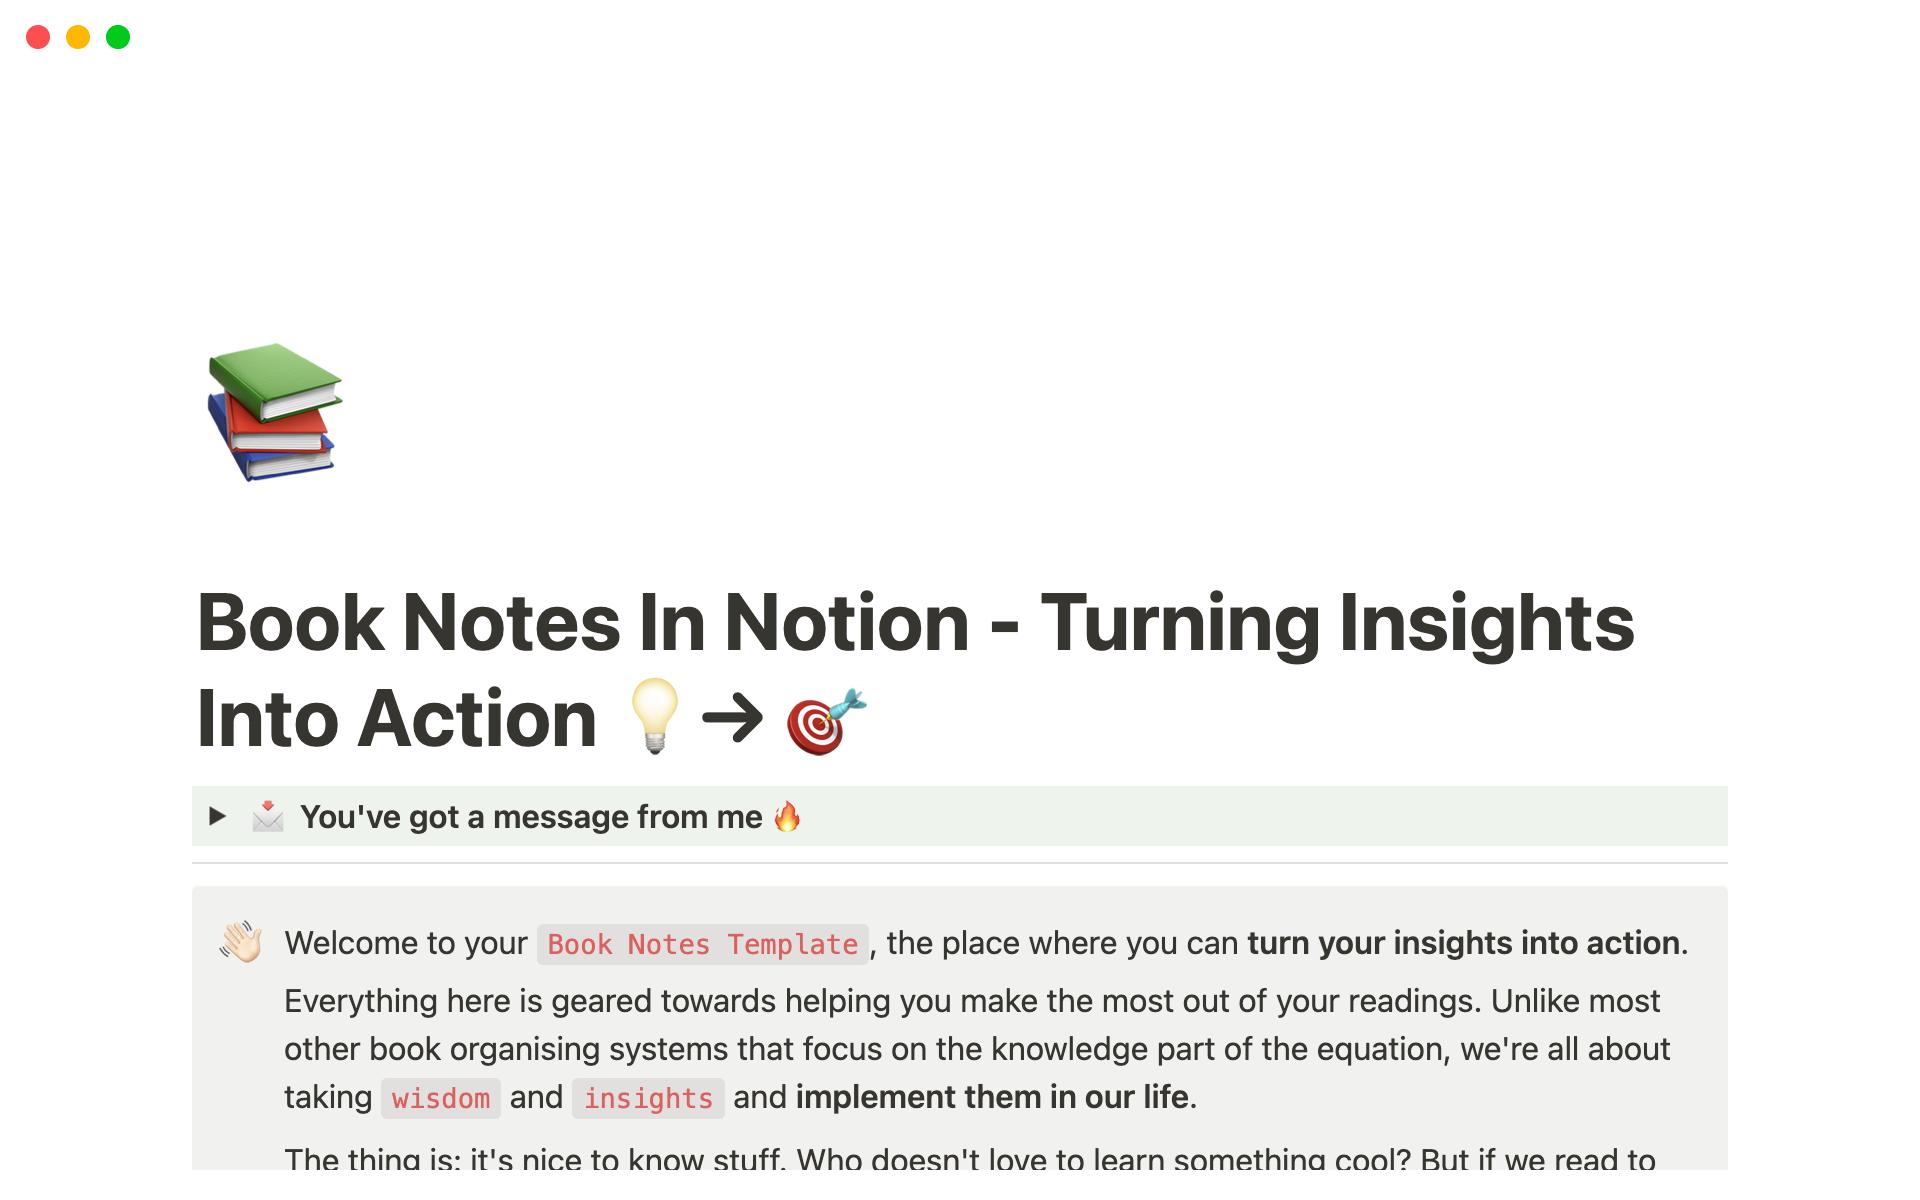 Aperçu du modèle de Book Notes for Notion